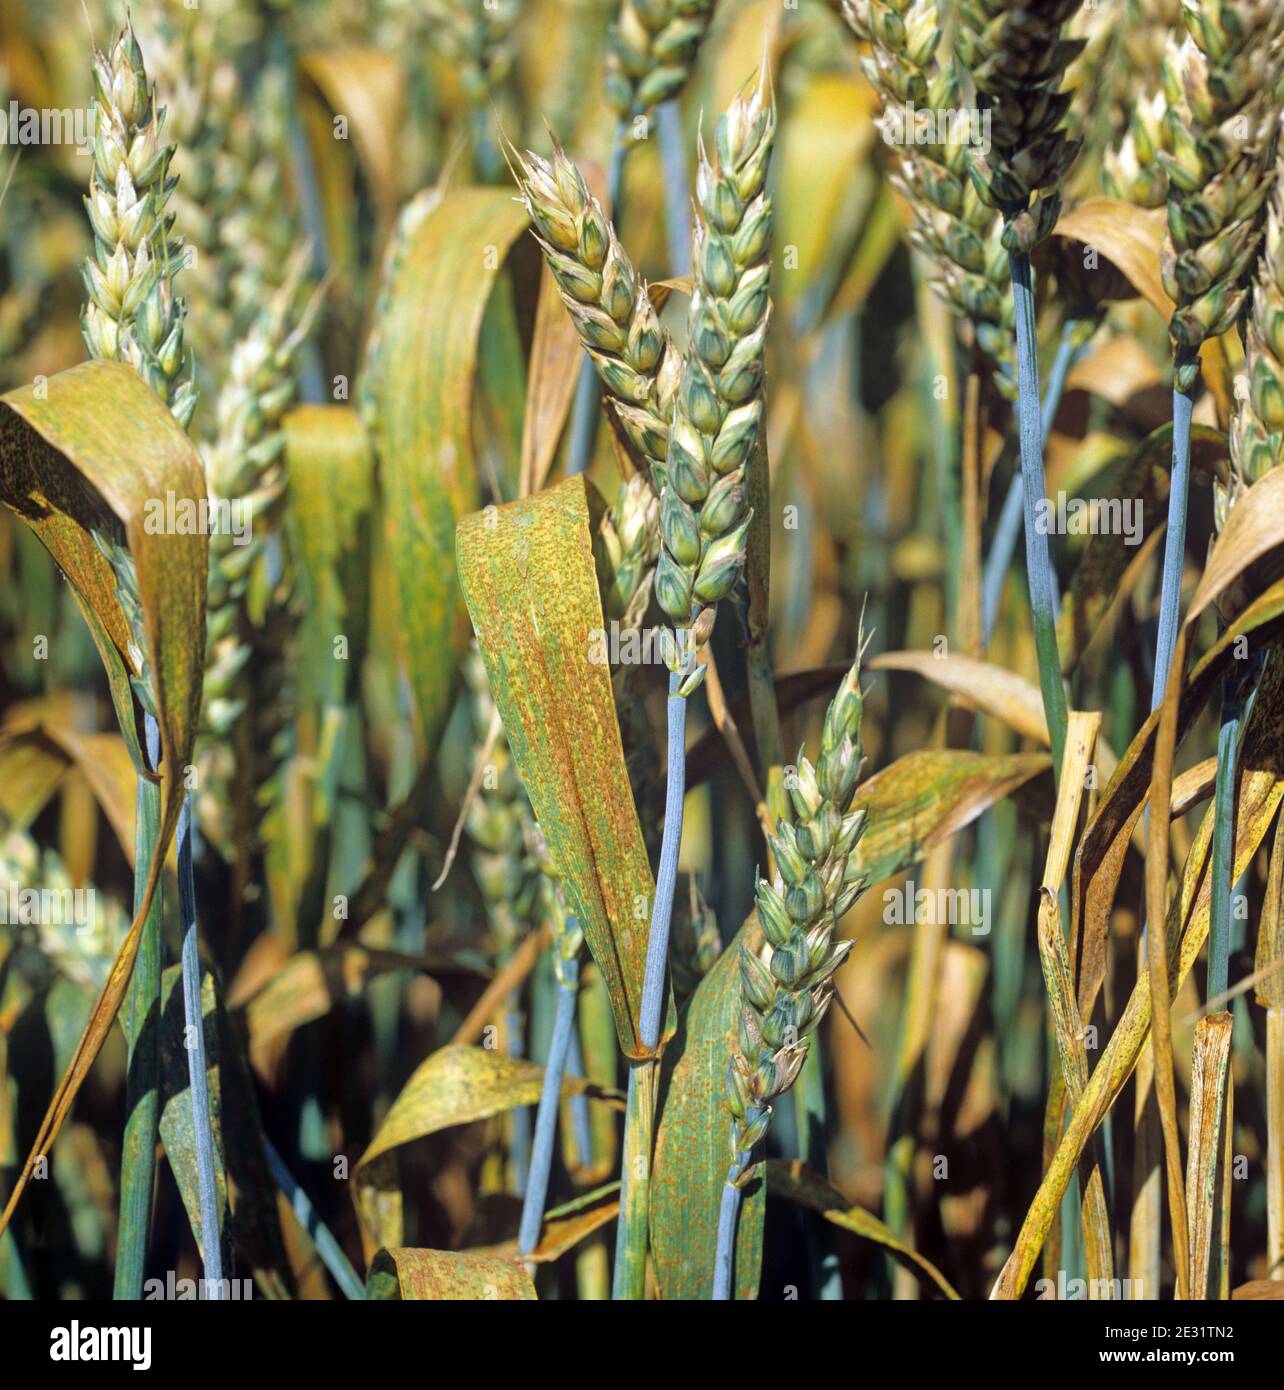 Weizenblattrost oder brauner Rost (Puccinia triticina) Infektion auf den Flaggenblättern und Ernte eines Winterweizens Im Ohr Stockfoto